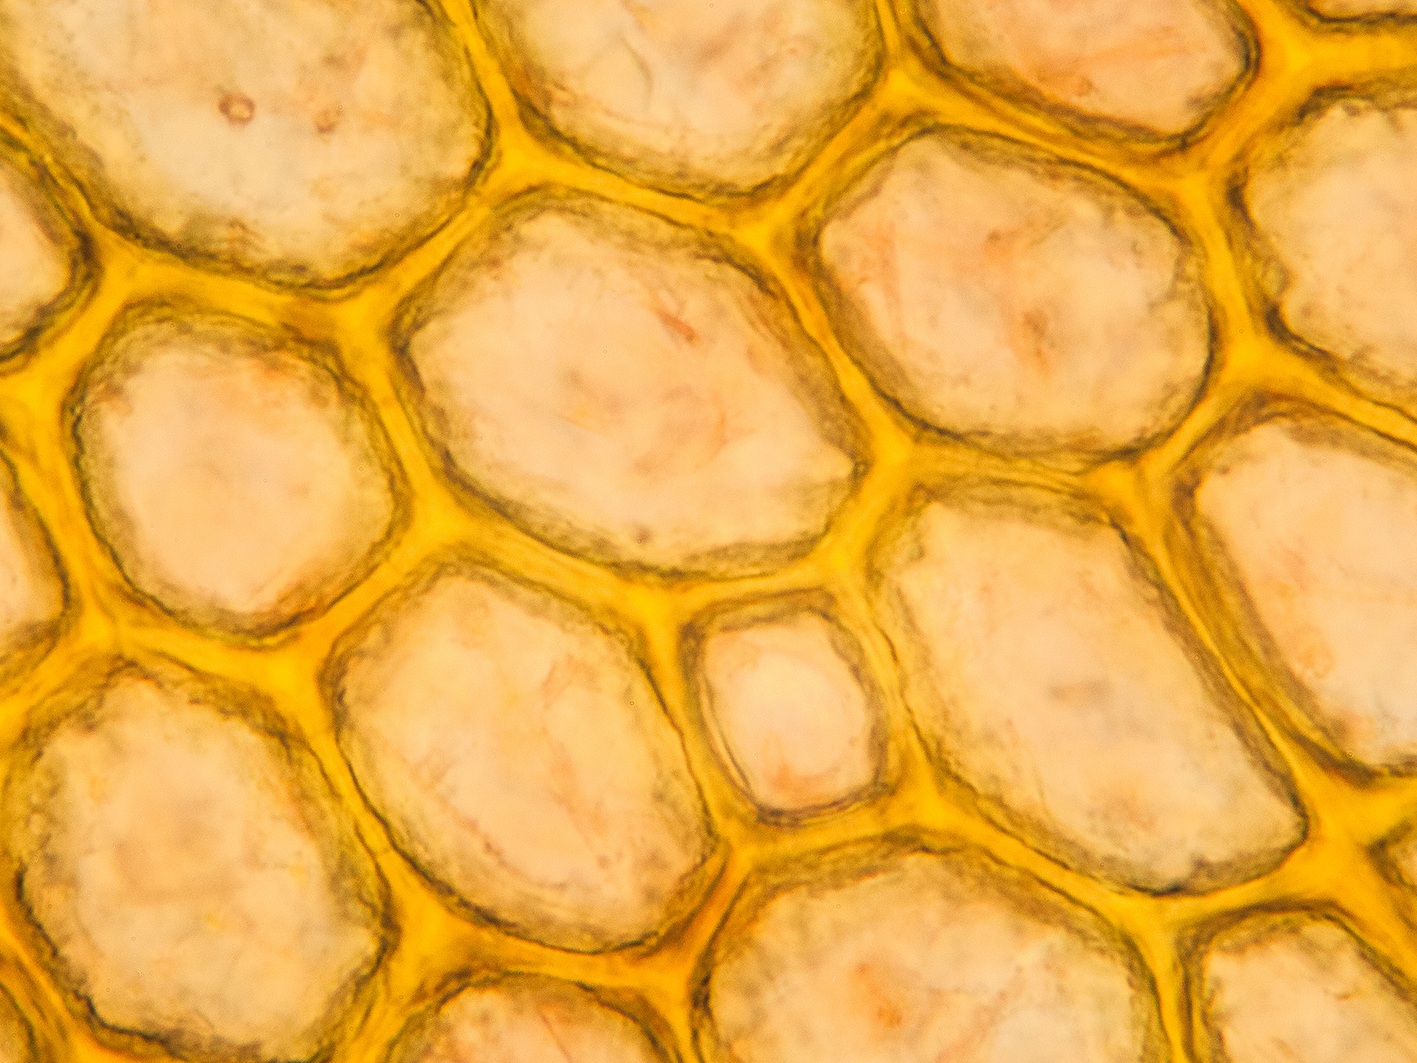 Клетки мякоти мандарин под микроскопом